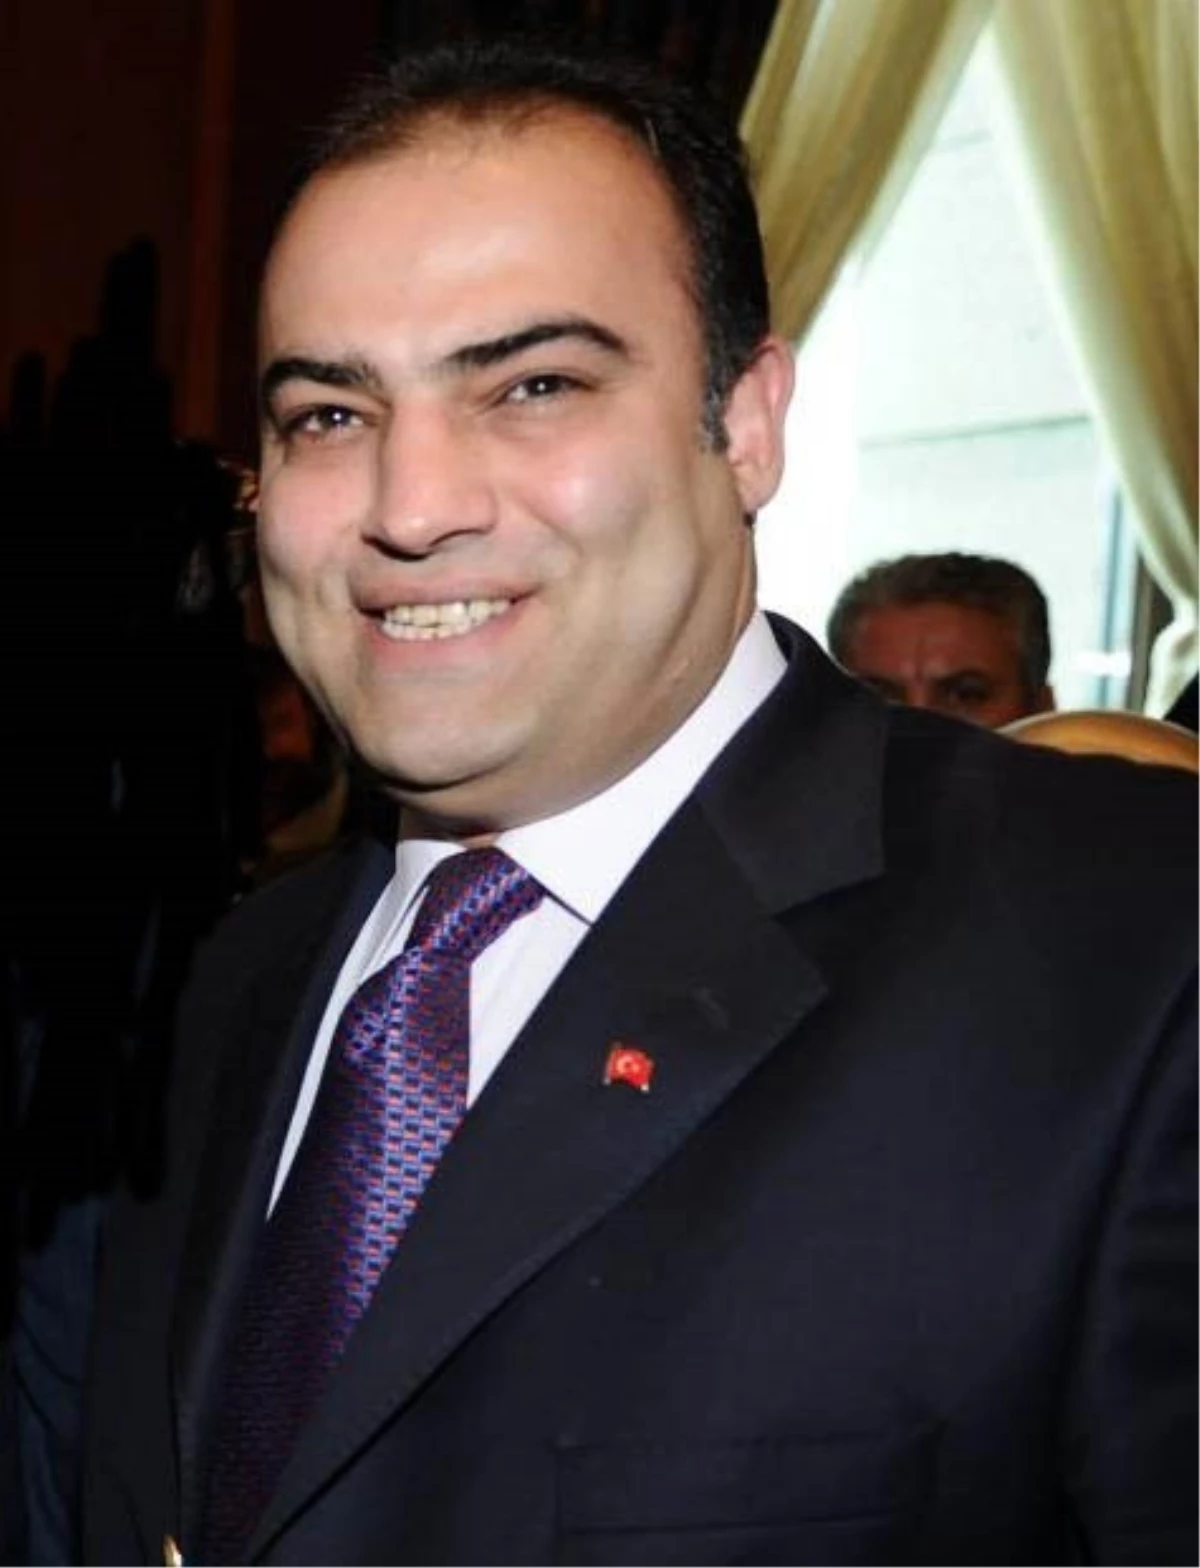 Kızak Federasyonuna Erzurumlu Başkan